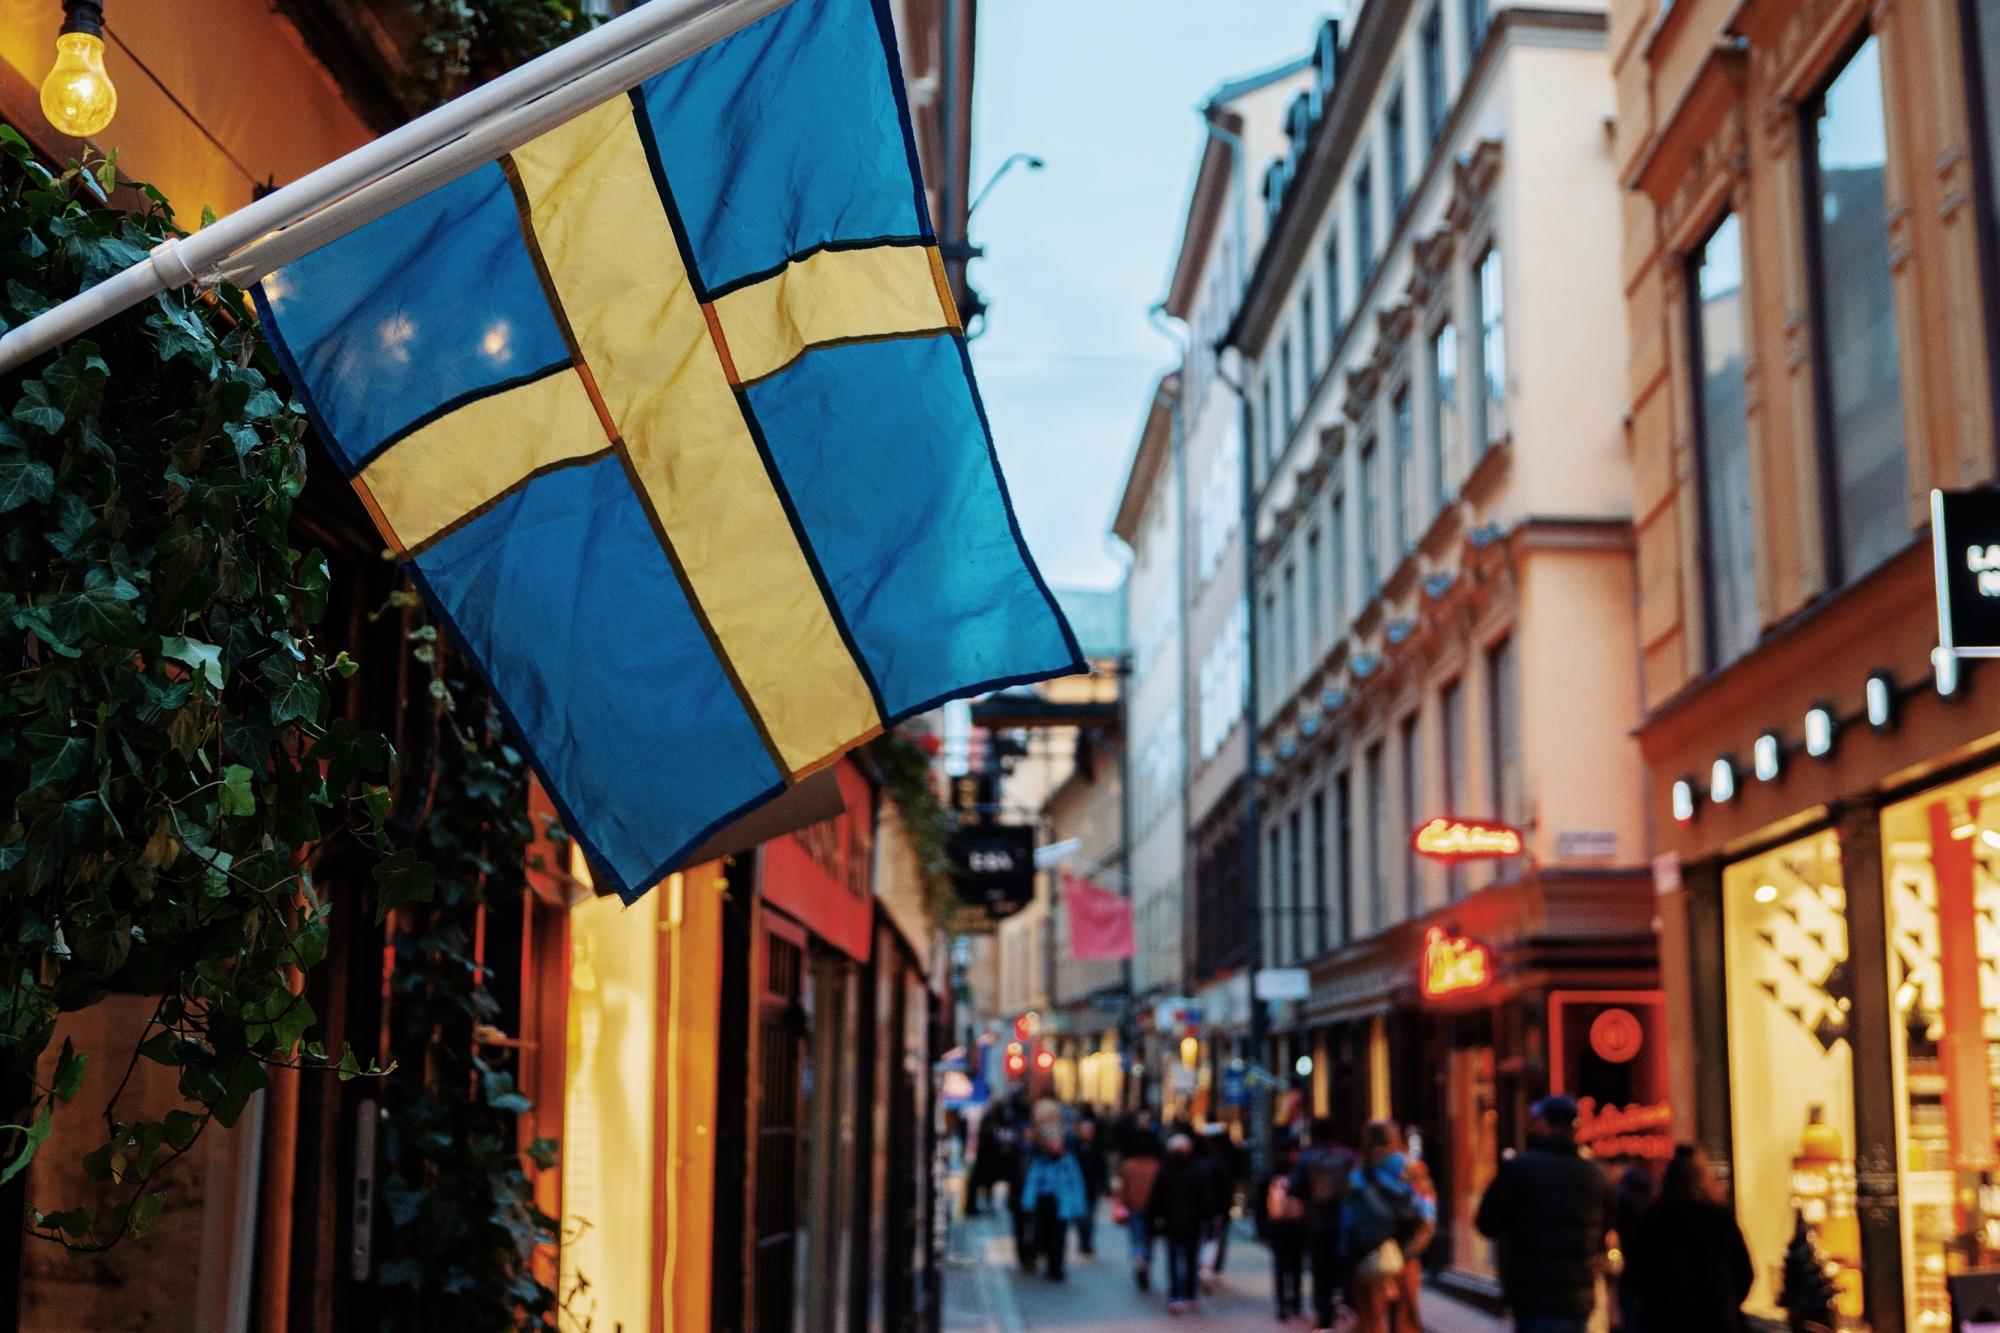 En butik, på en gata, med en svensk flagga som hänger vid entrén. I bakgrunden syns människor som går på gatan.